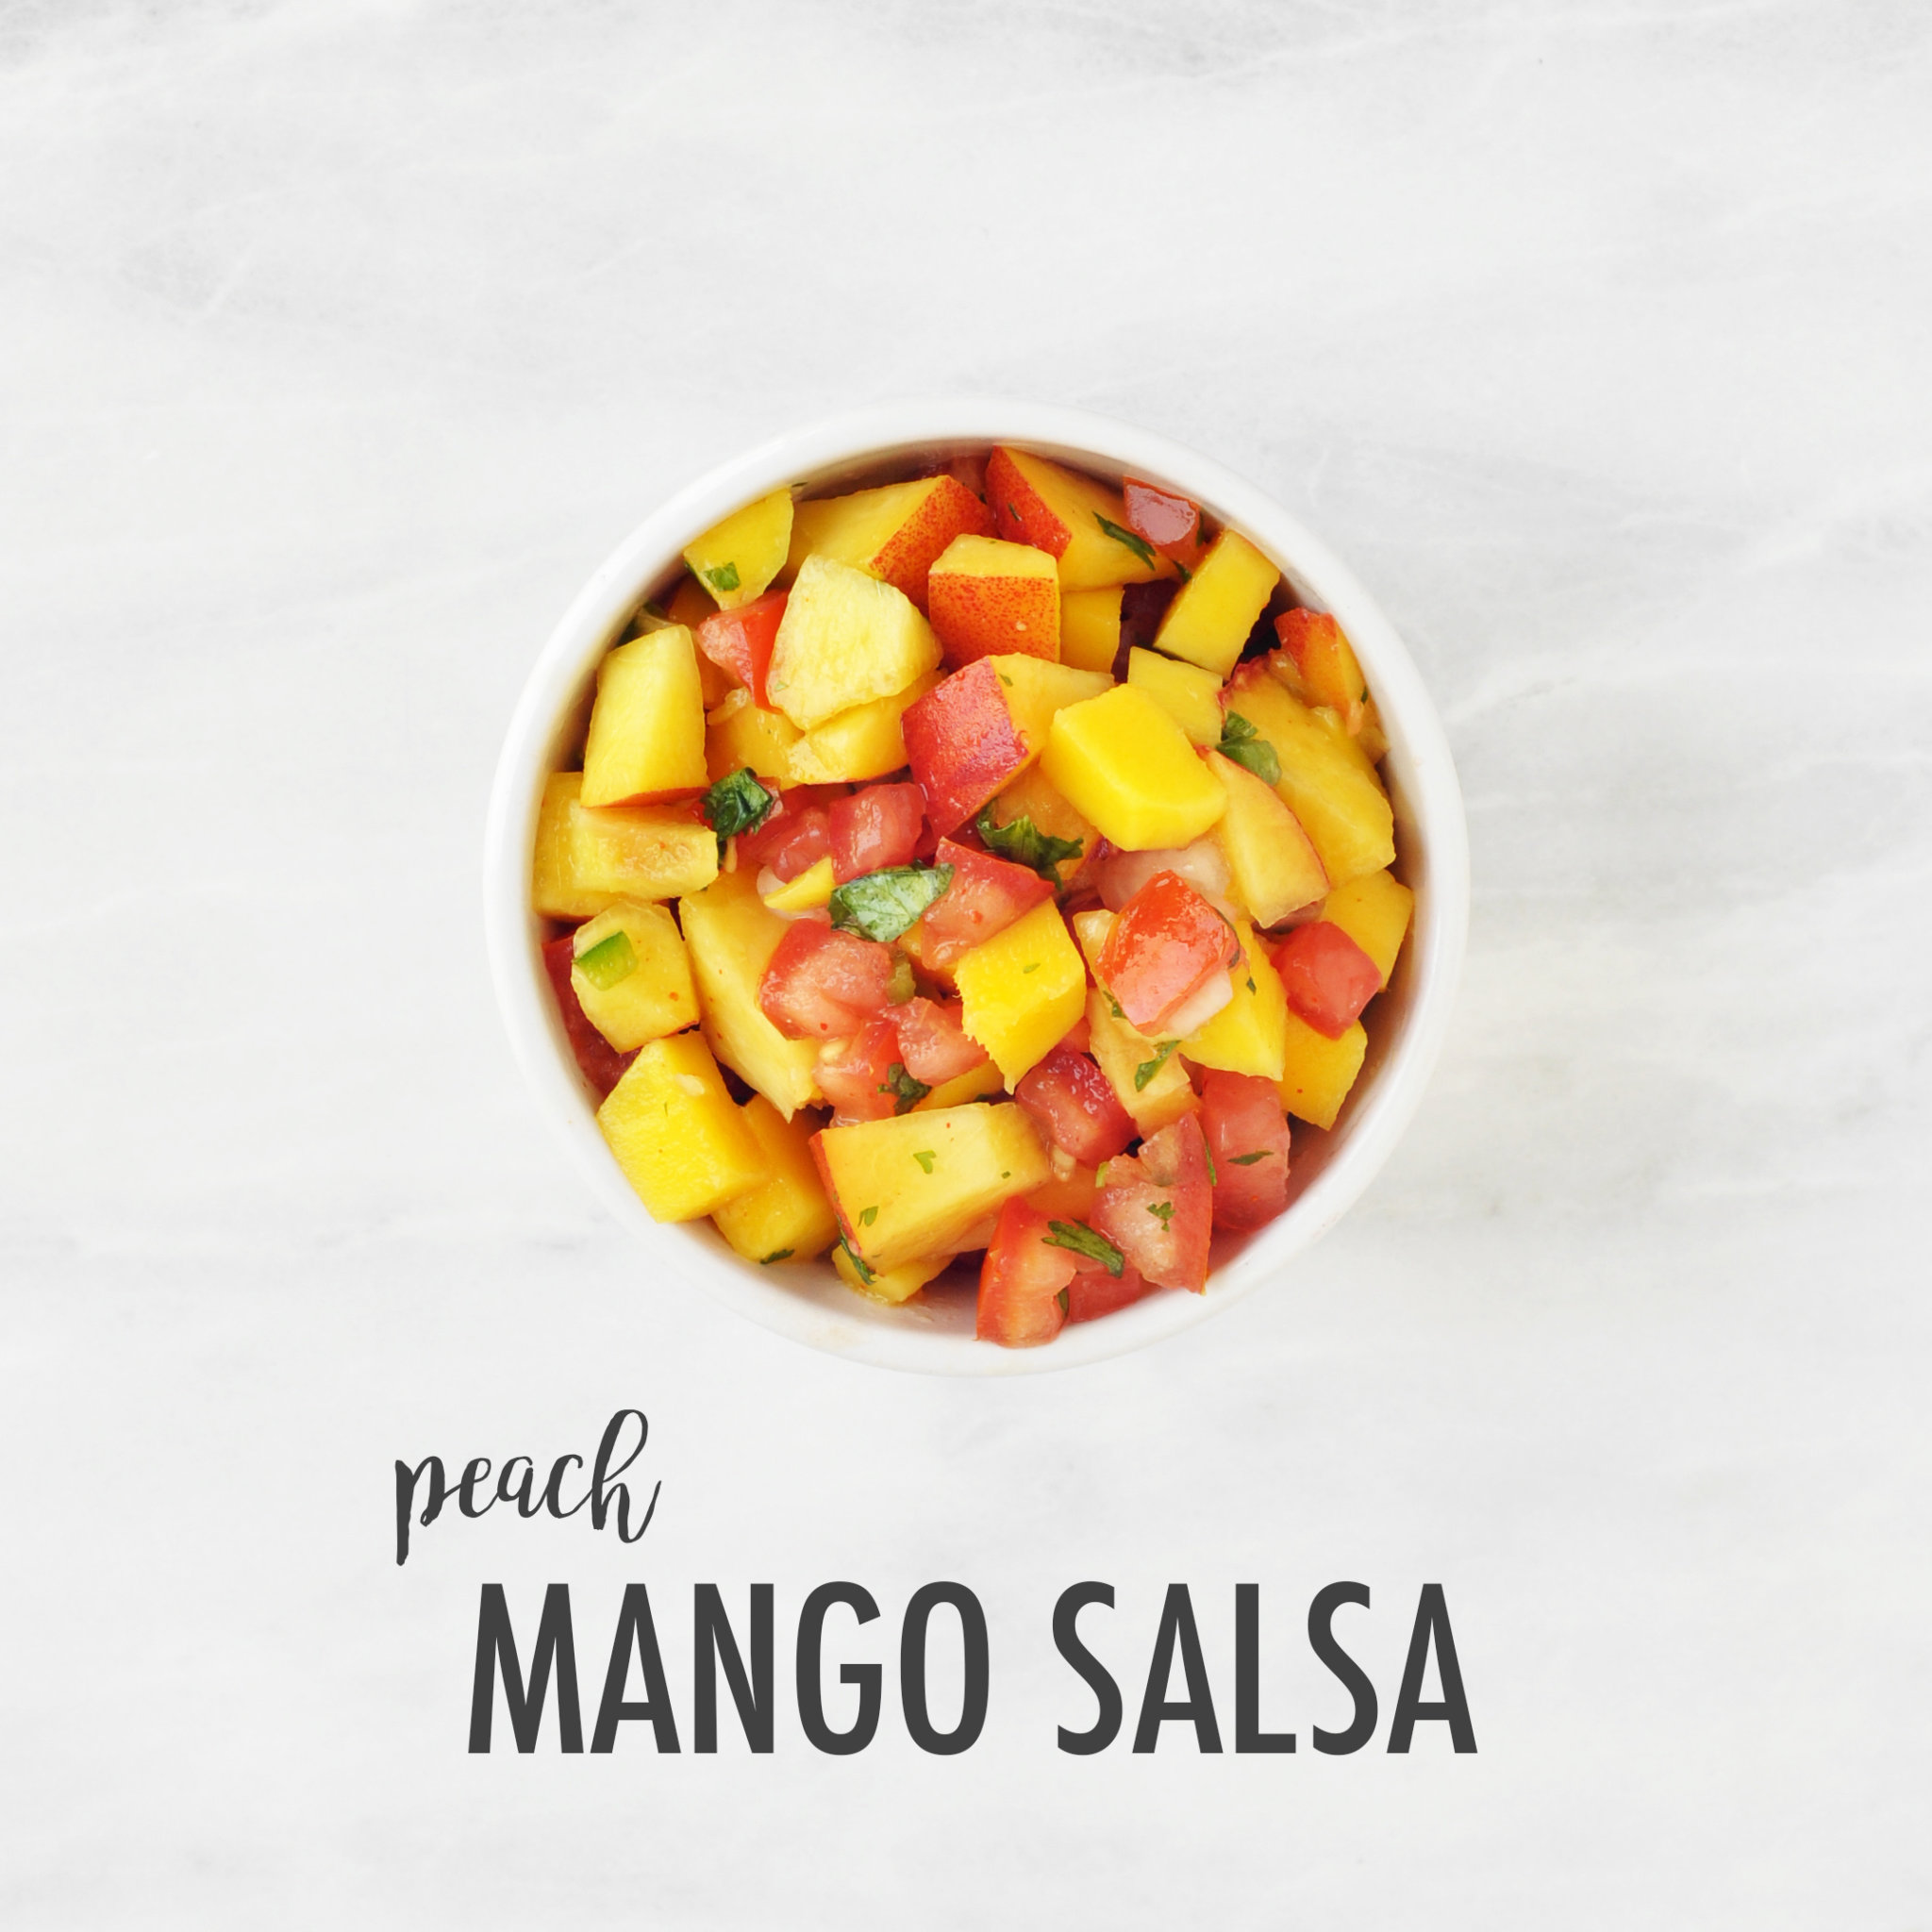 peach and mango salsa recipe